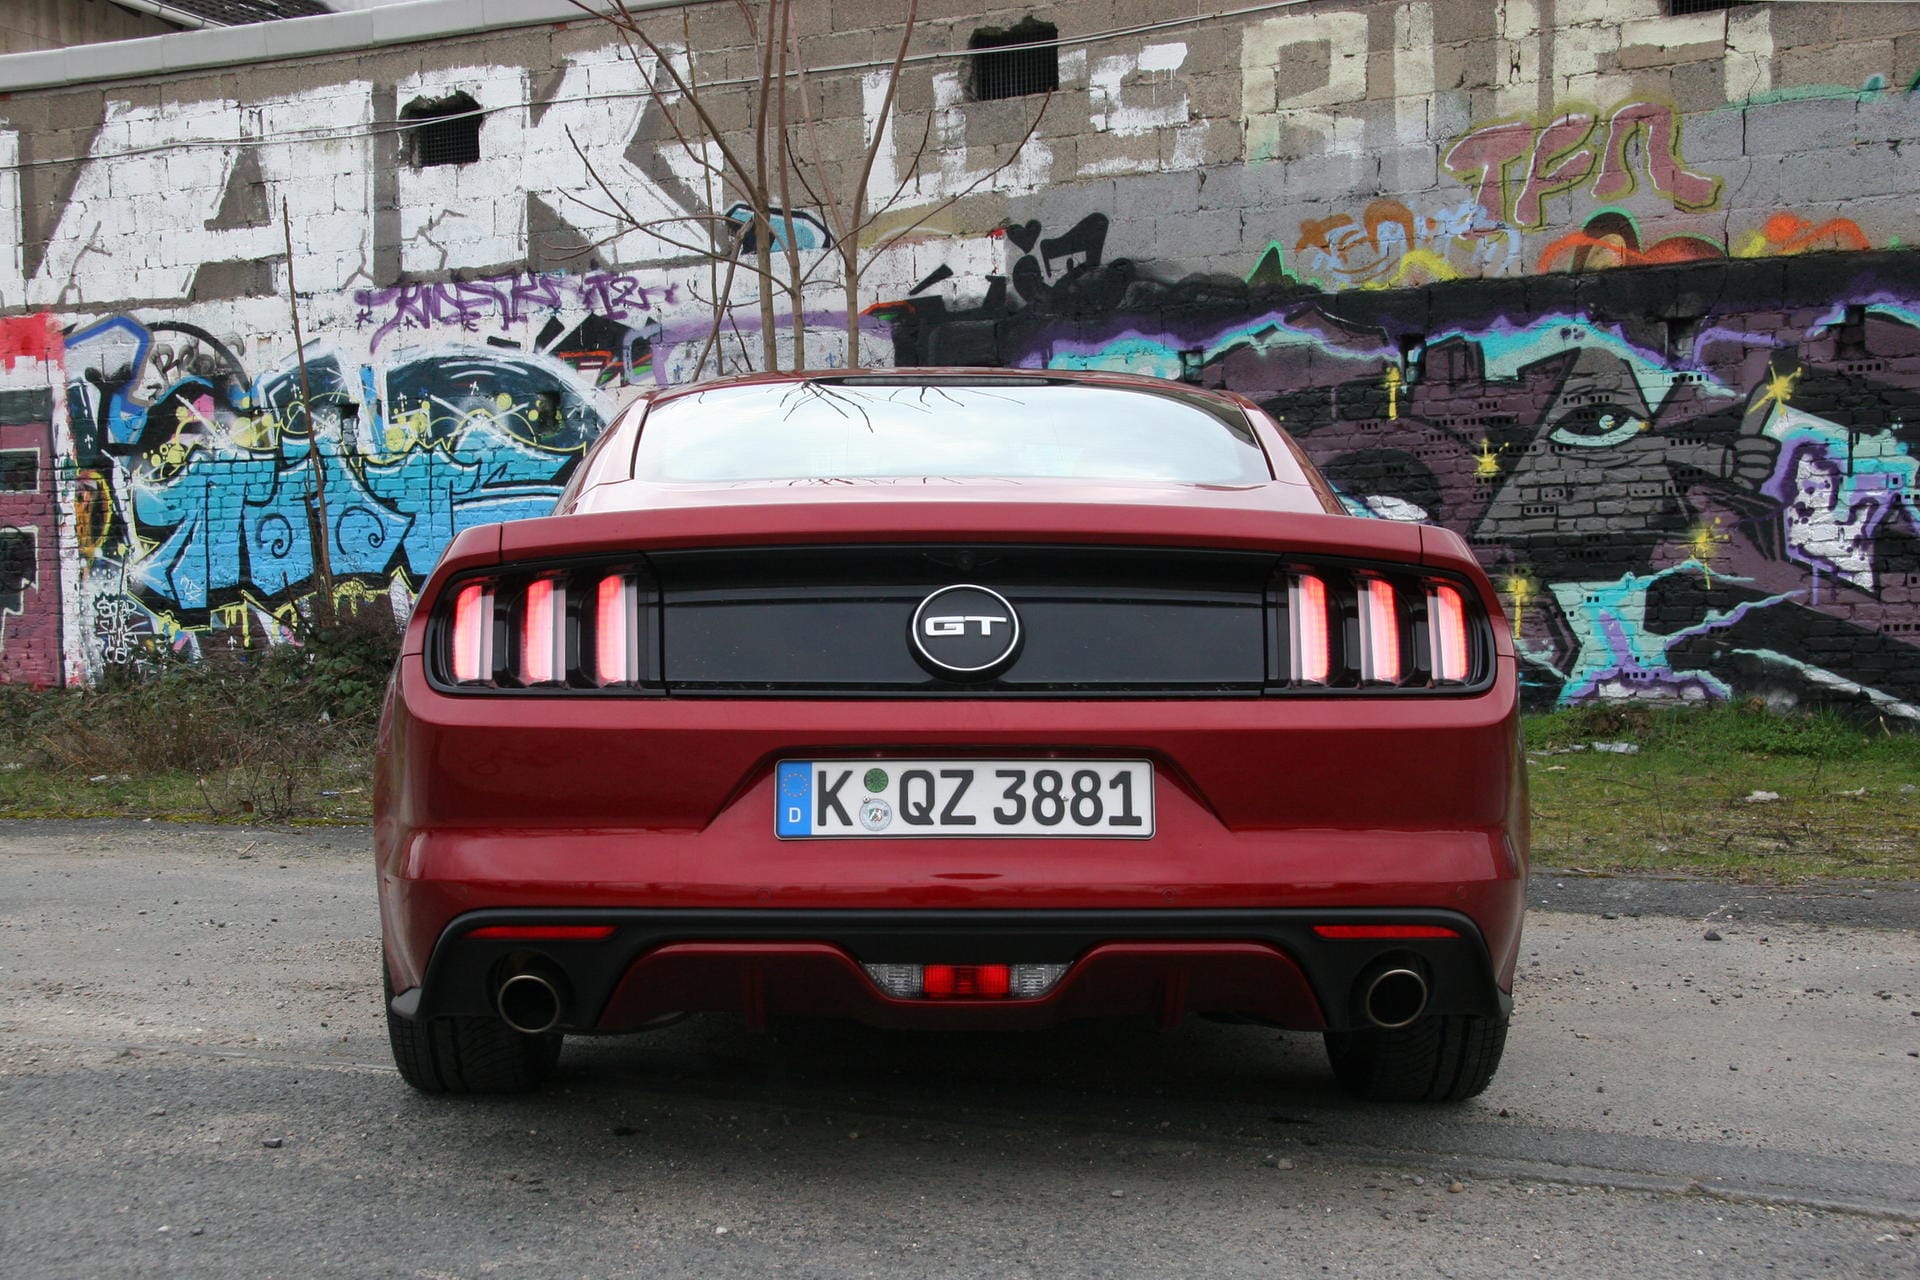 Ab 44.000 Euro geht die Preisliste für den Mustang GT los. Der Vierzylinder bekommen Sie schon ab 38.000 Euro.